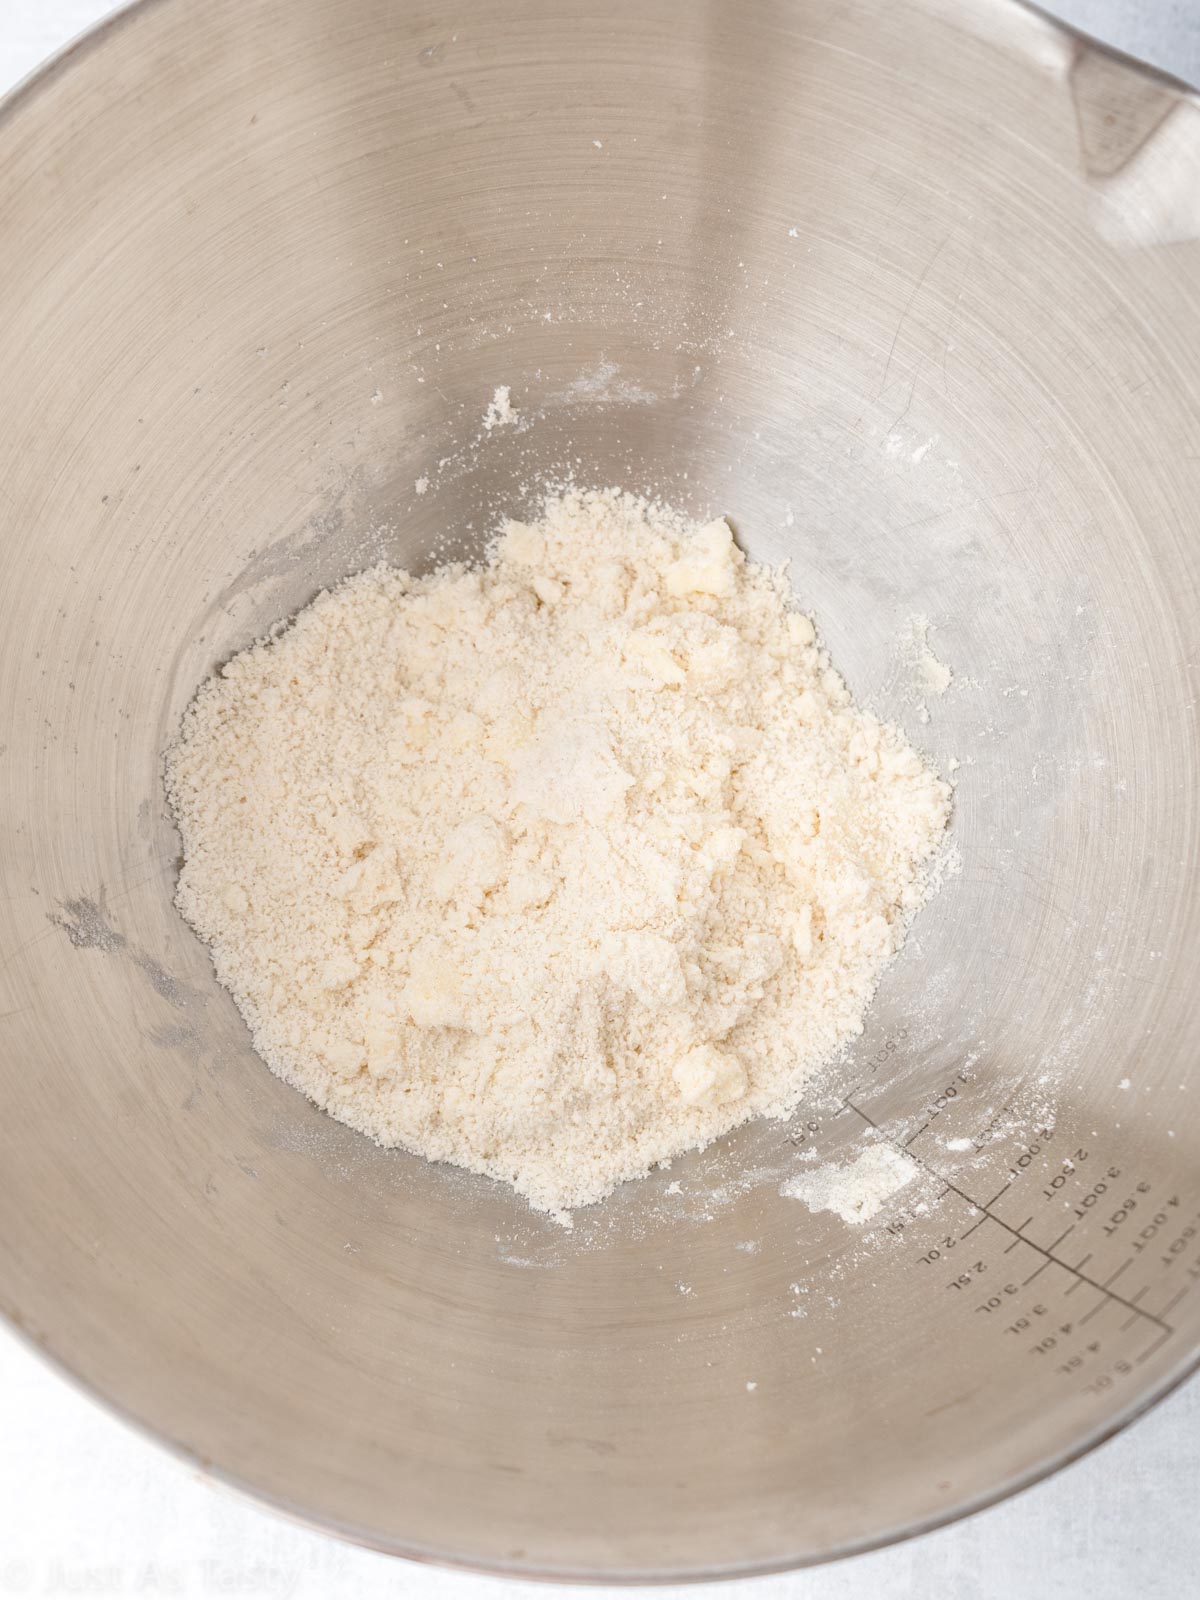 Shortbread dough in a bowl.